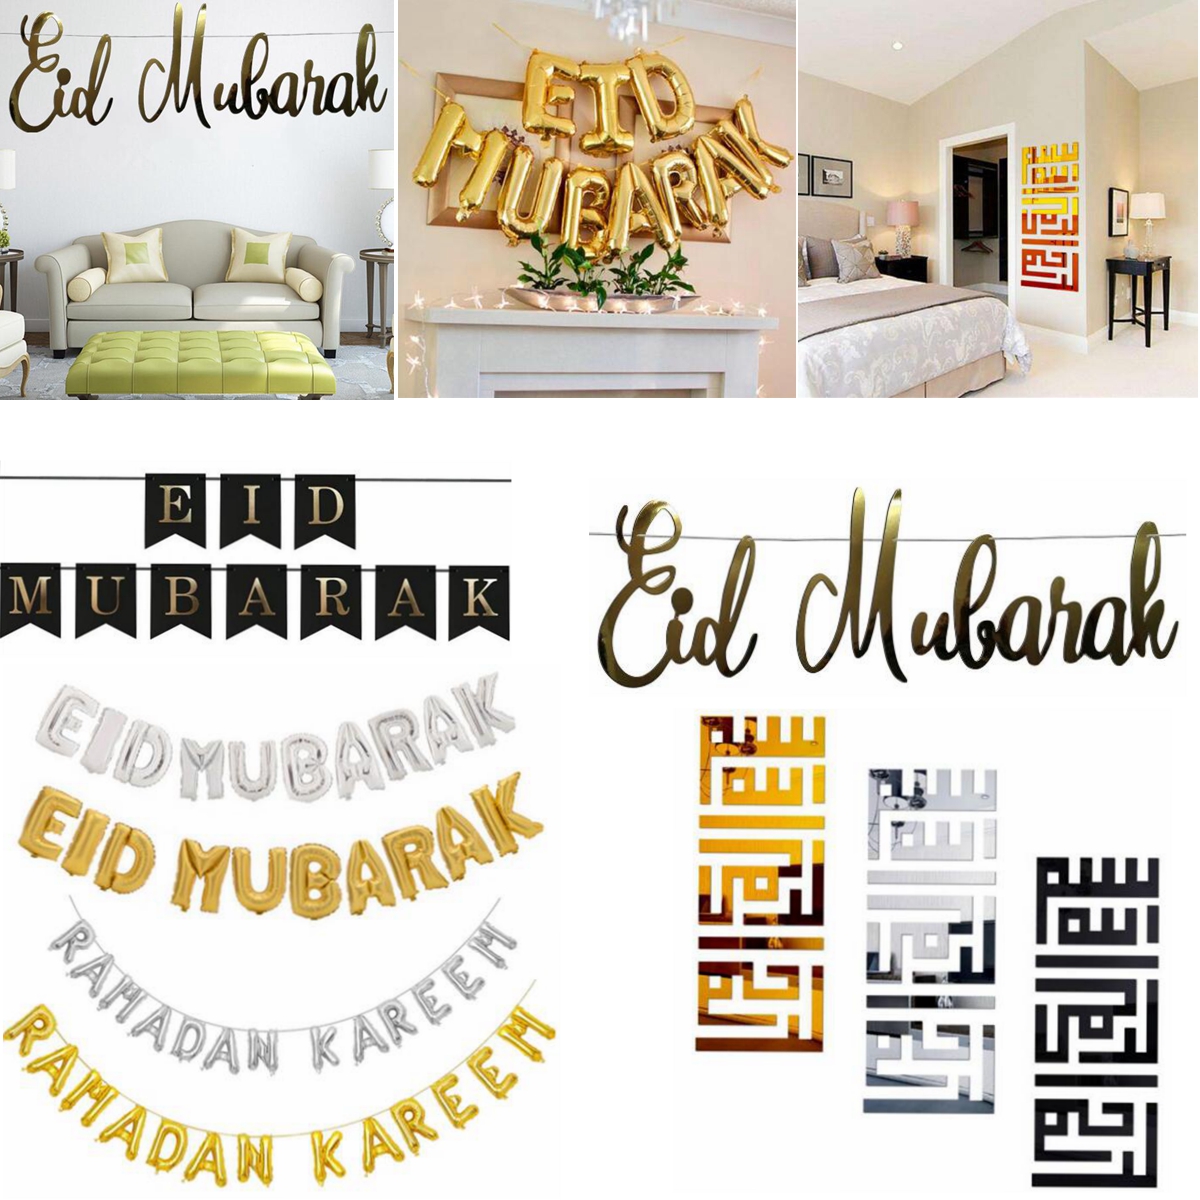 Eid-Mubarak-Ramadan-Kareem-Islam-Pennant-Bunting-Home-Party-Banner-Decorations-1632760-1